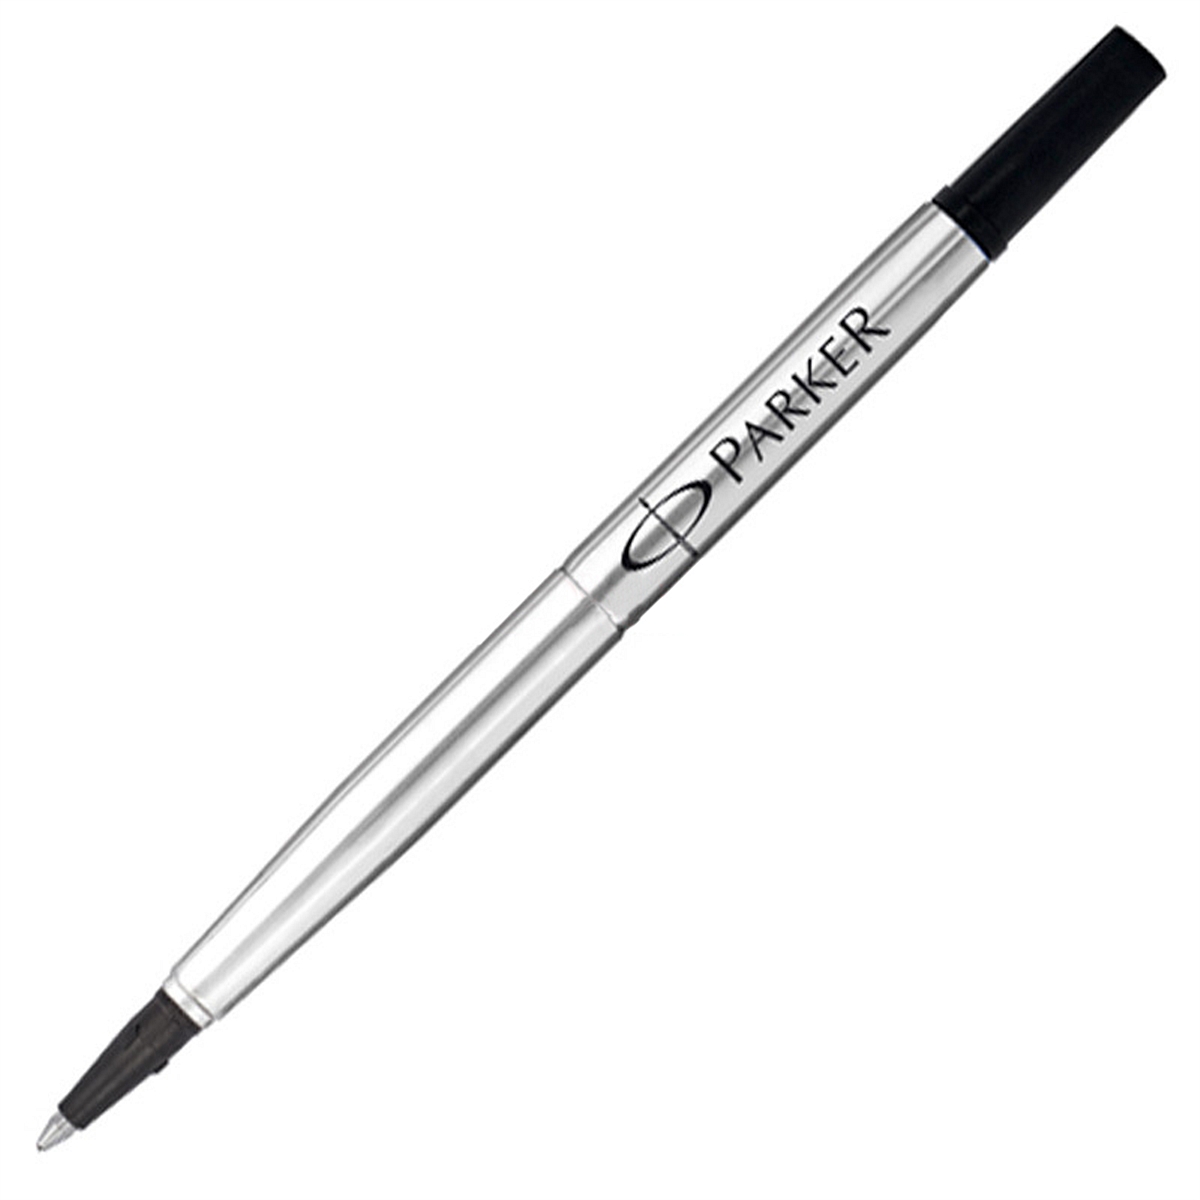 派克宝珠笔芯签字笔笔芯黑色0.7mm(支)